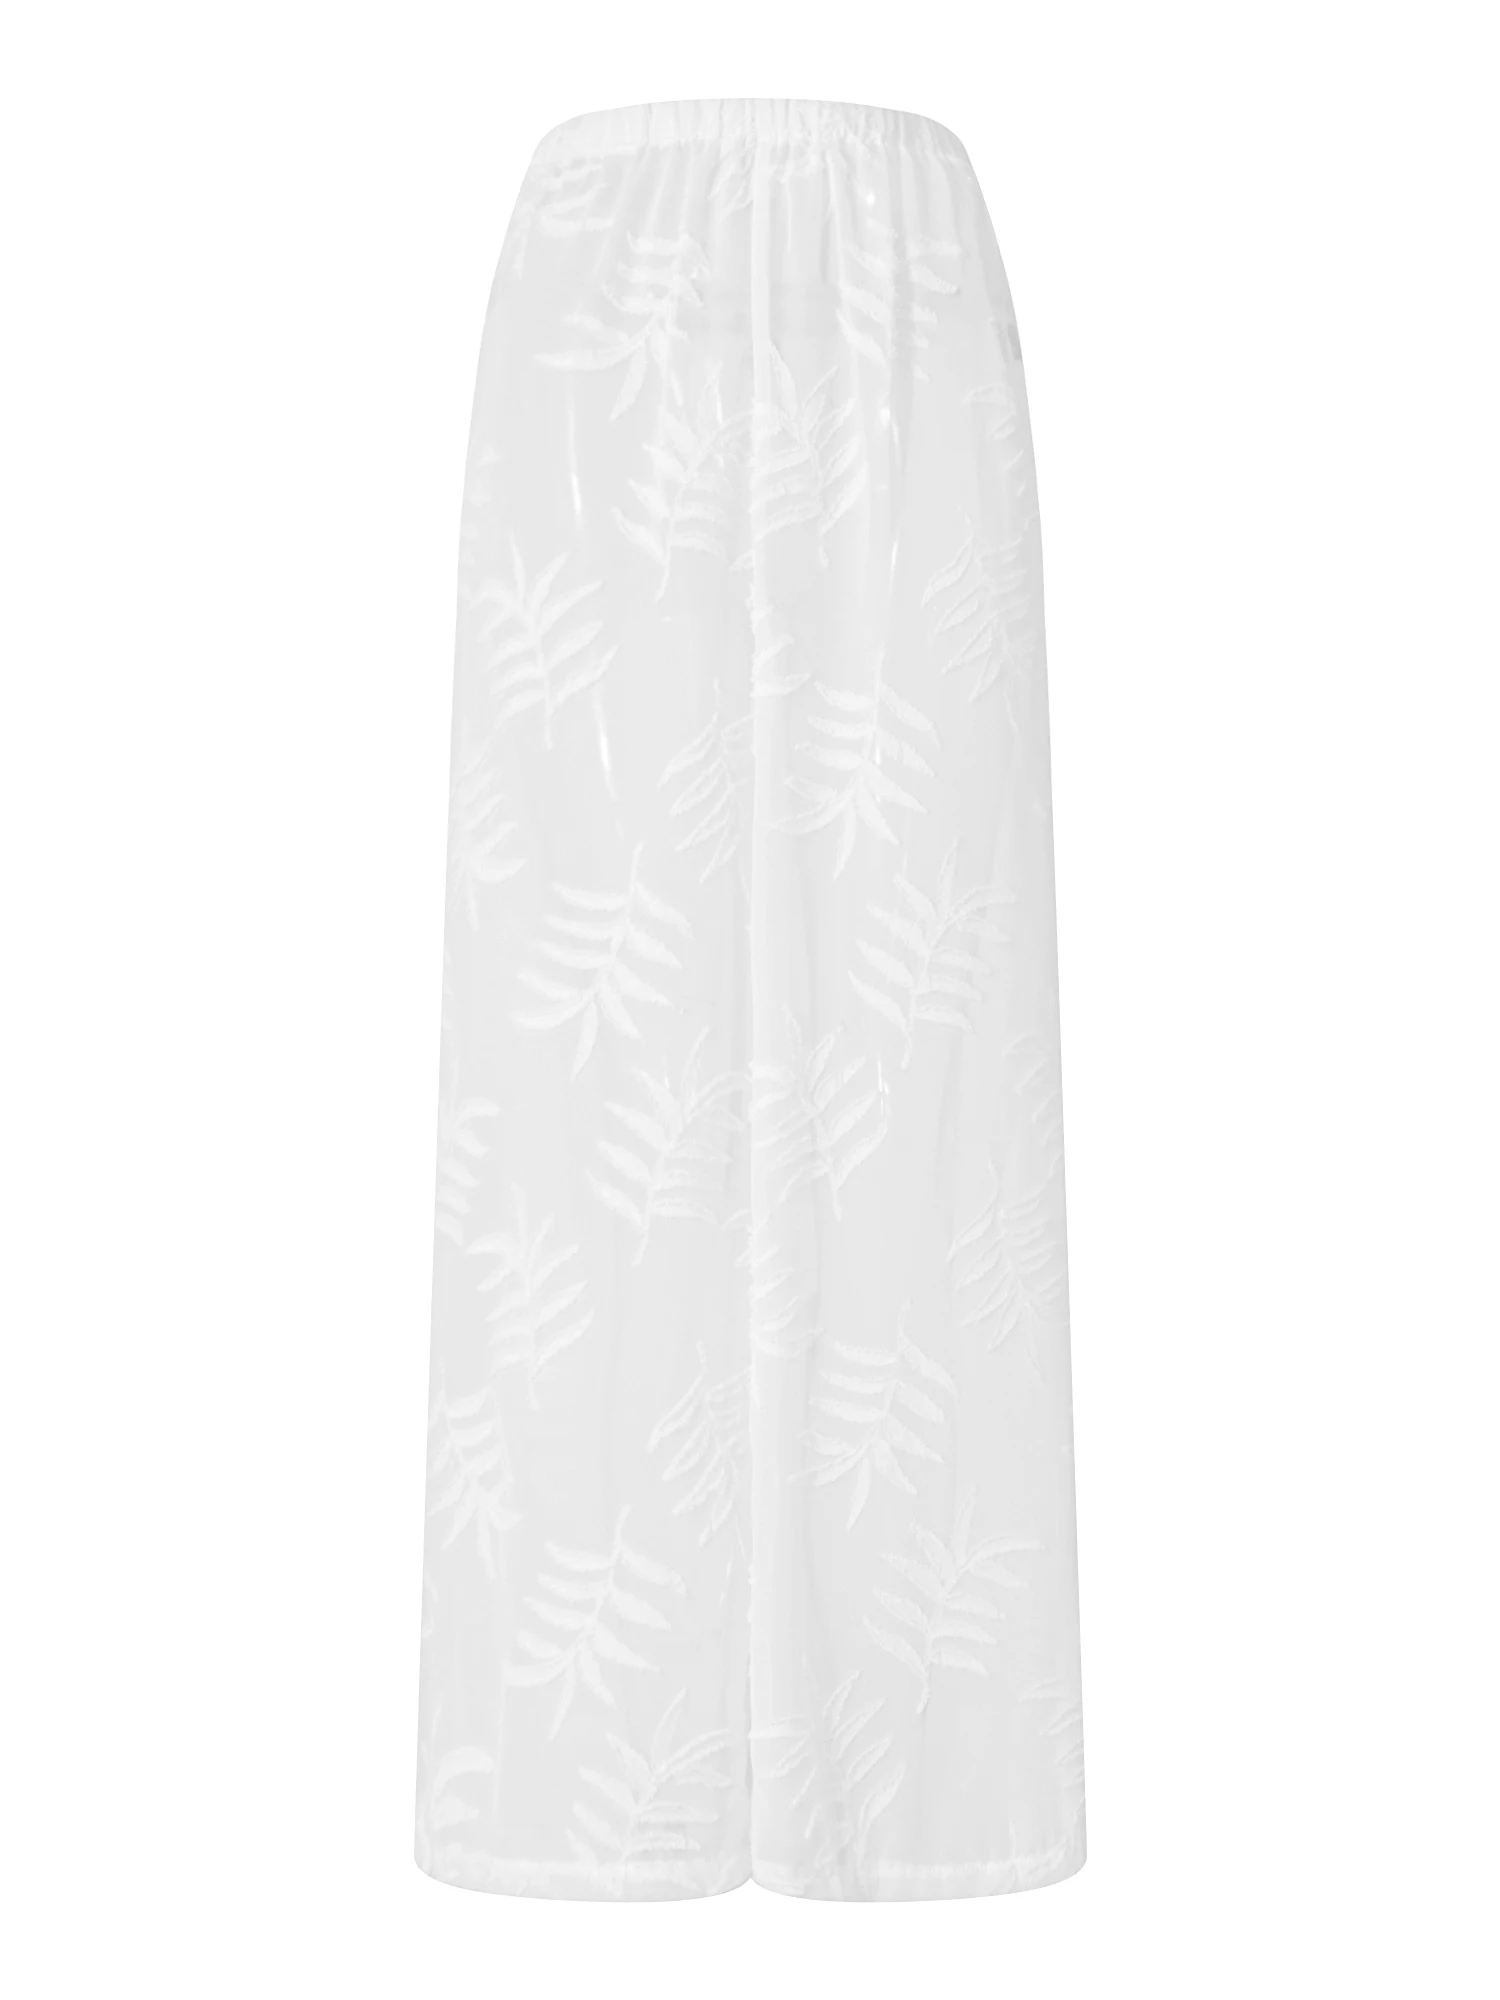 Женские прозрачные сетчатые пляжные брюки - прозрачные плавки бикини с широкими штанинами для накидок купальников и купальников